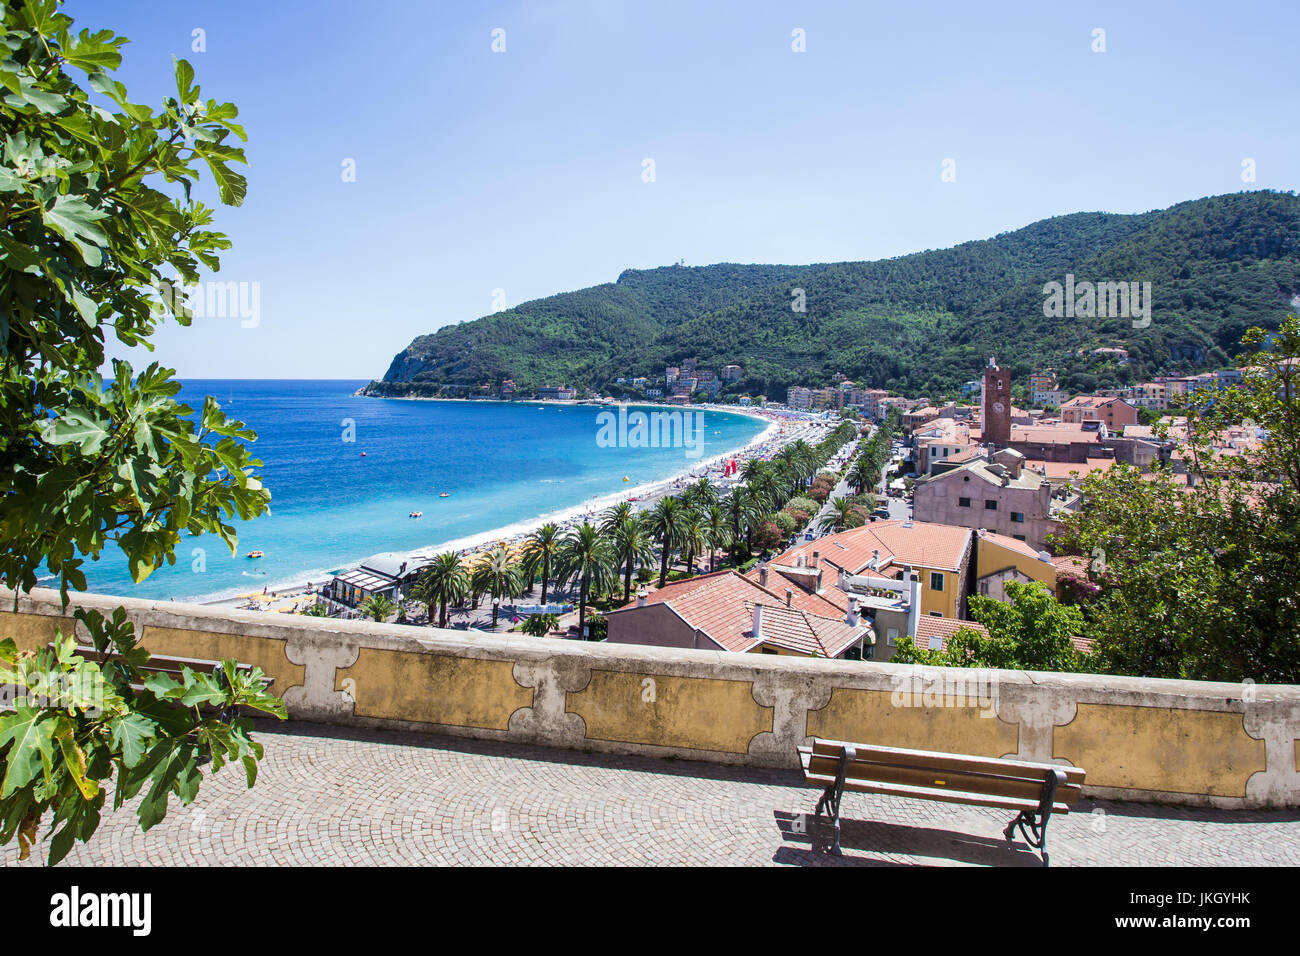 Noli, Riviera di Ponente, Liguria, Italy Stock Photo